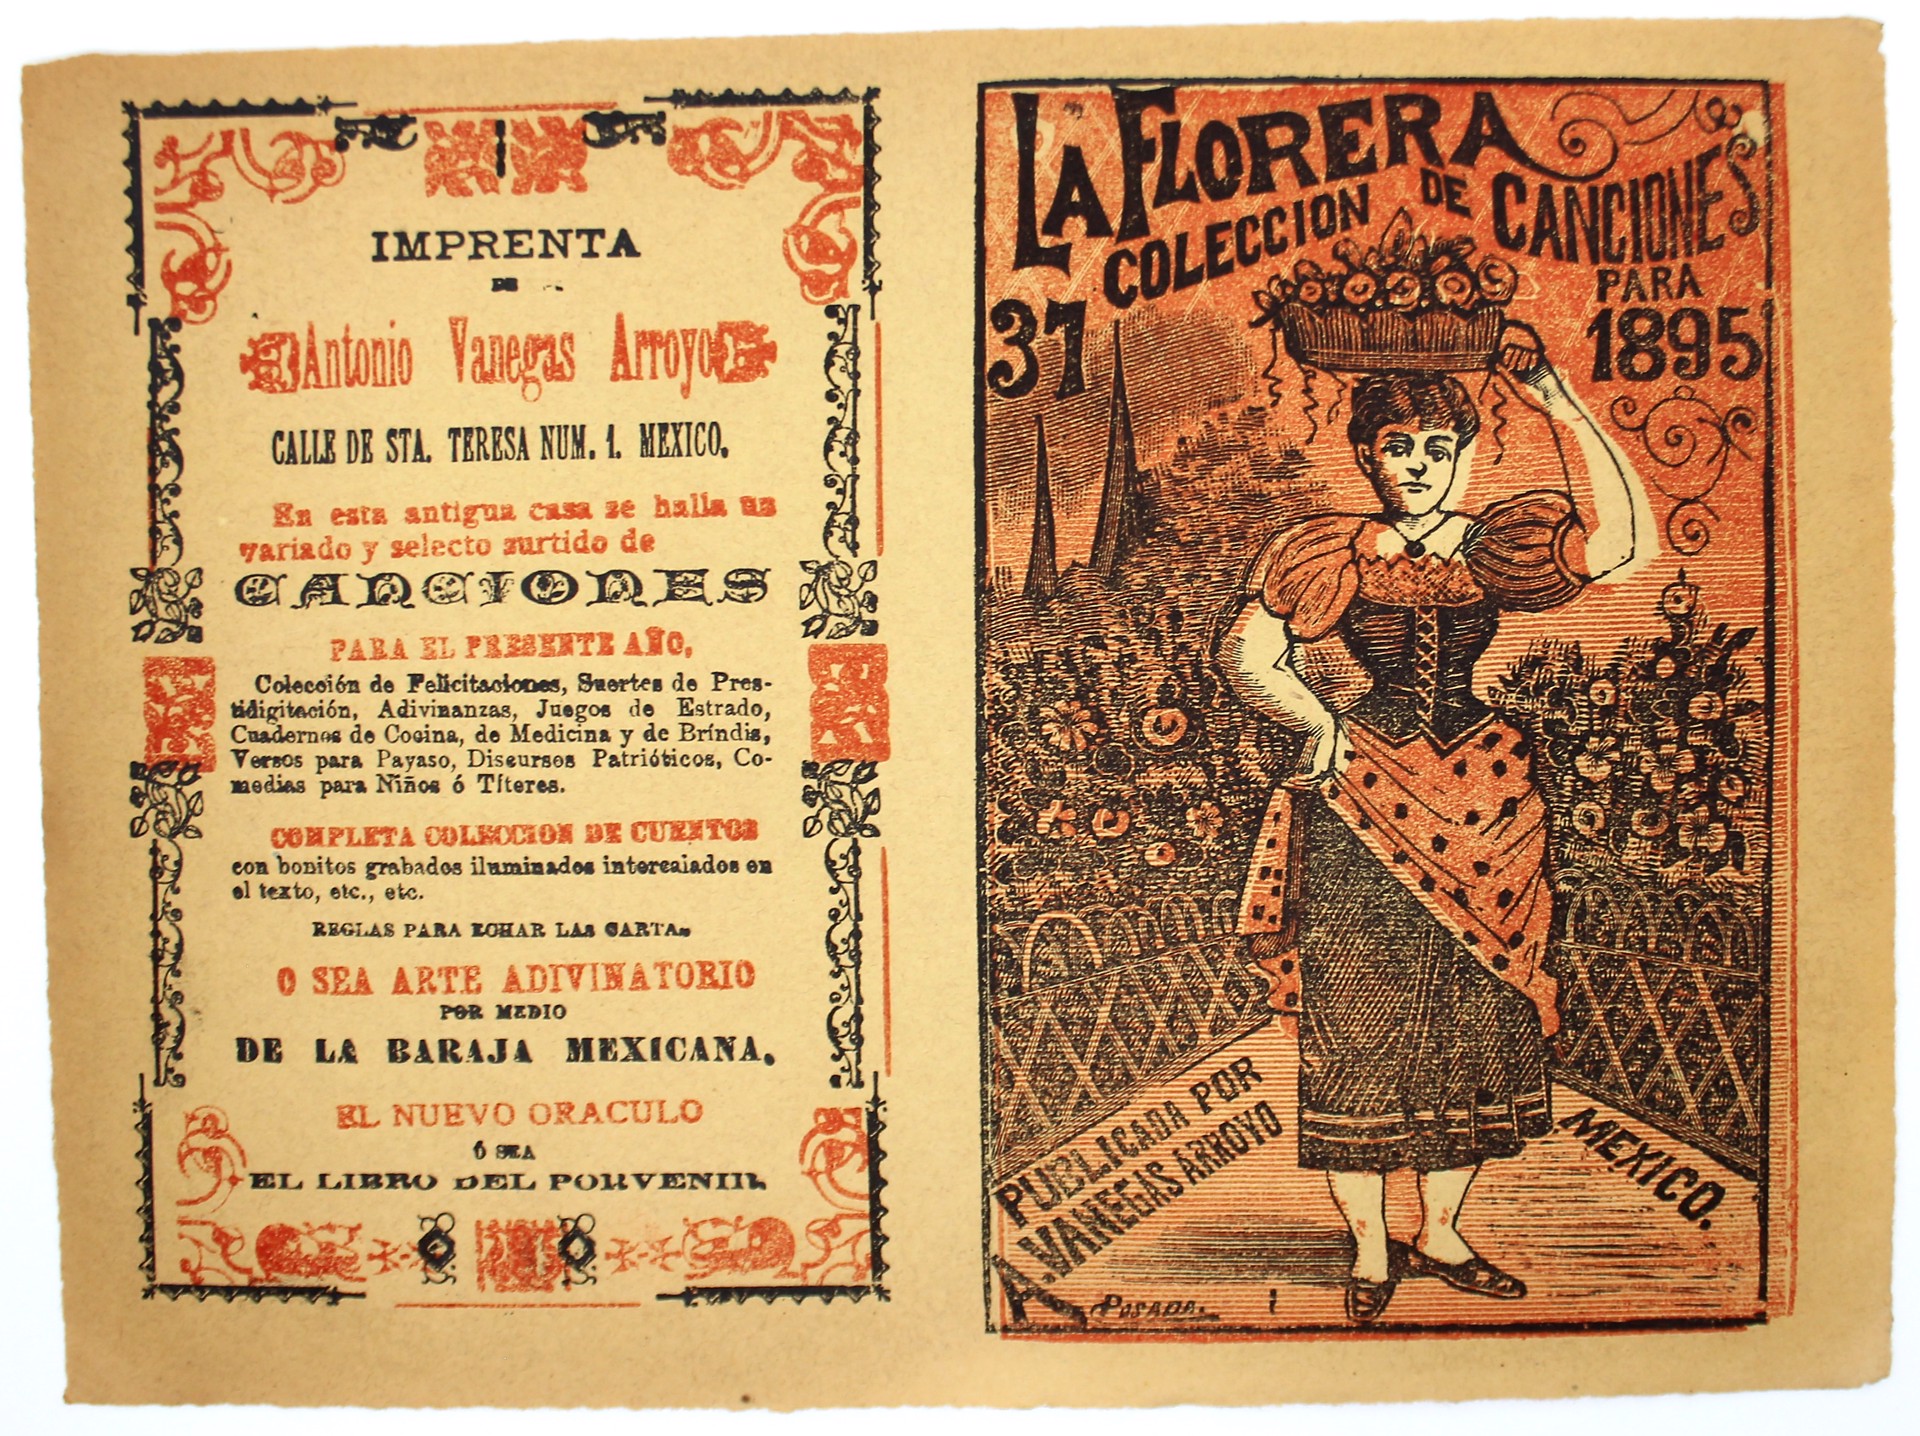 La Florera. Coleccion de canciones, No. 37 by José Guadalupe Posada